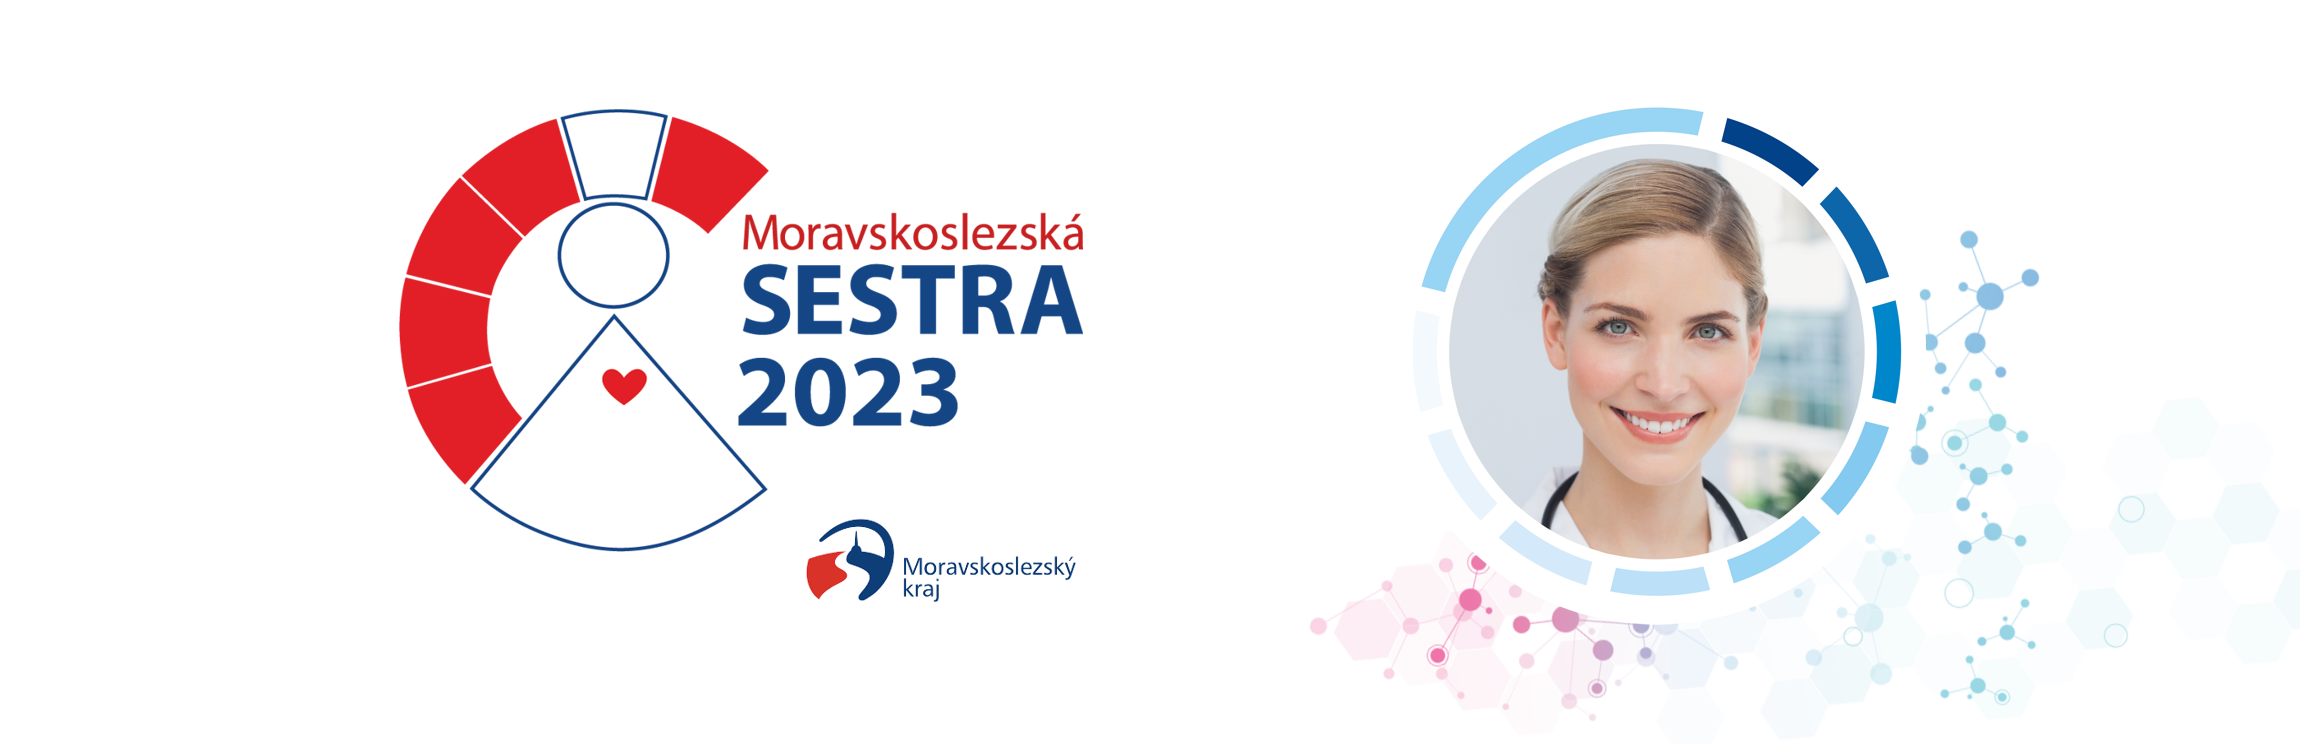 Moravskoslezská SESTRA 2023 - Jdi na úvod